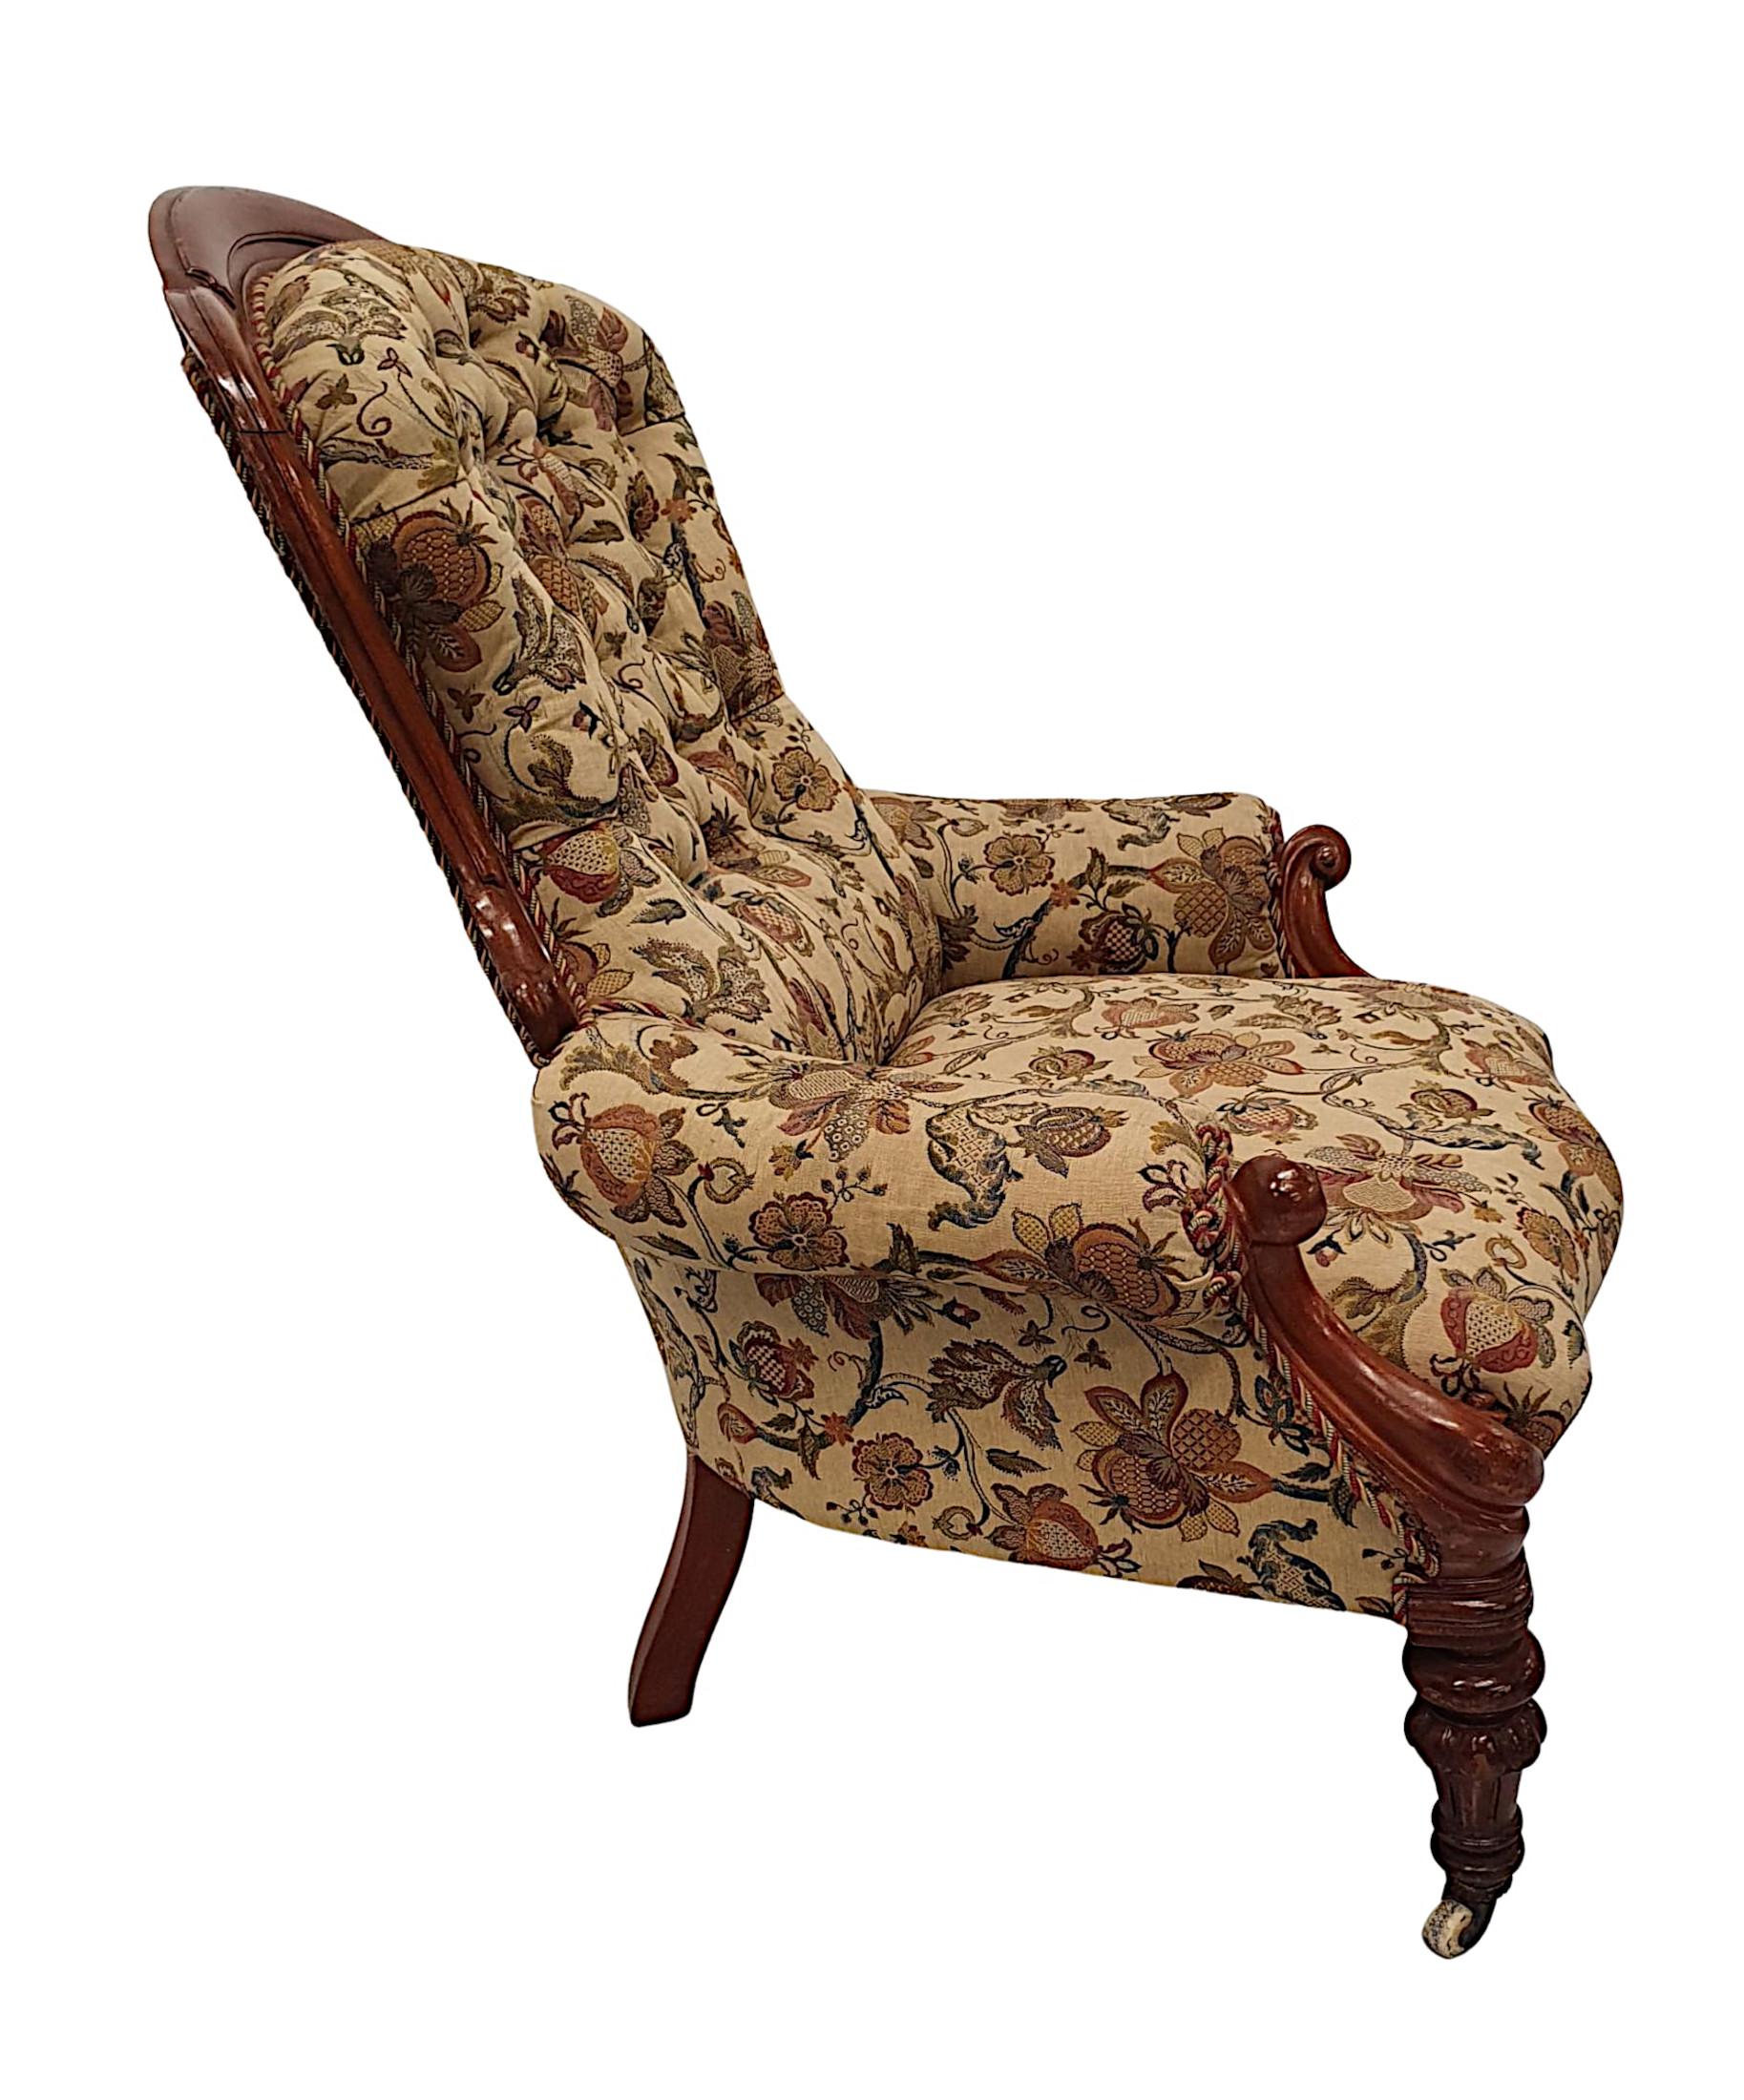 Un magnifique fauteuil du 19ème siècle en acajou avec dossier à boutons, entièrement restauré et d'une qualité fabuleuse. Le dossier incurvé, encadré de détails en acajou magnifiquement sculptés à la main, est surmonté d'accoudoirs à volutes, avec